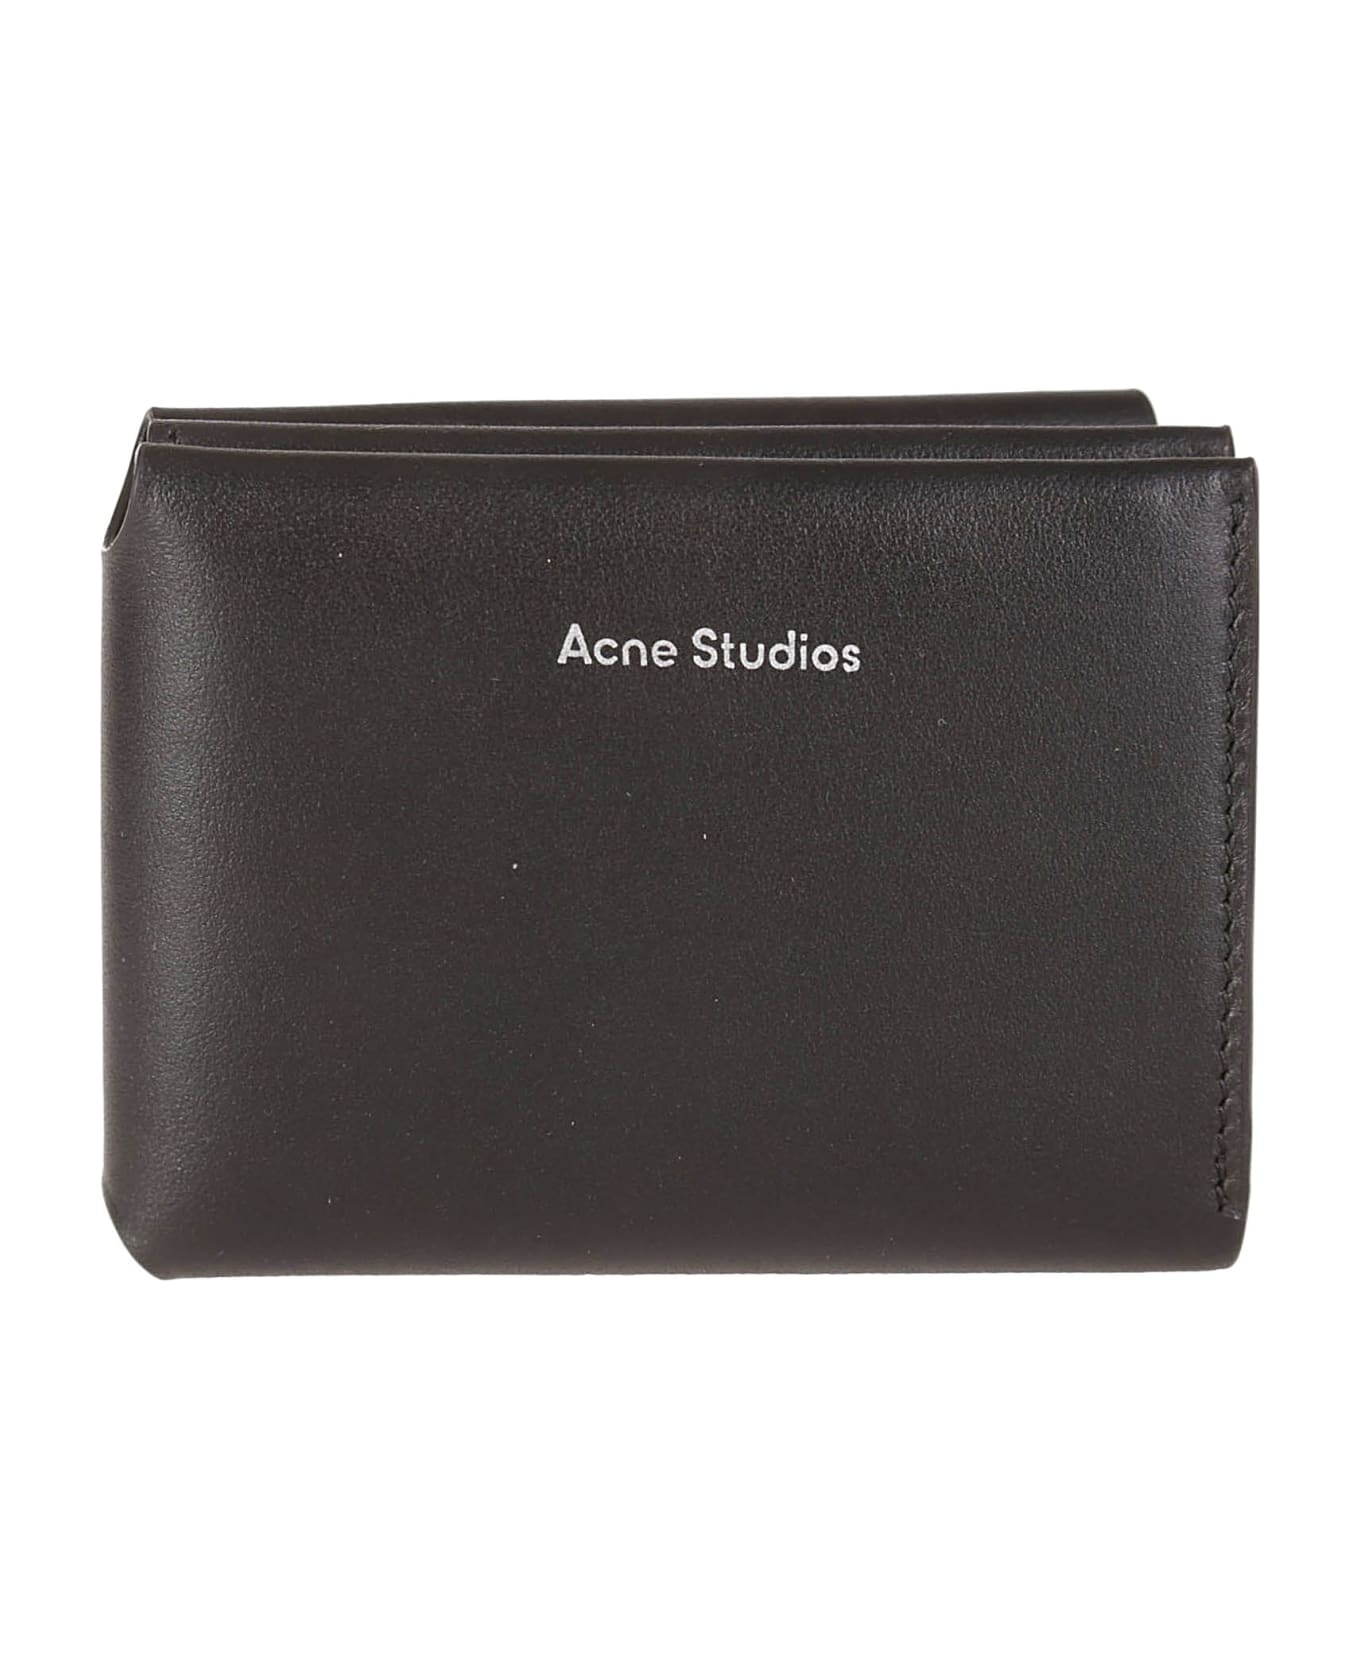 Acne Studios Wallet - Black 財布